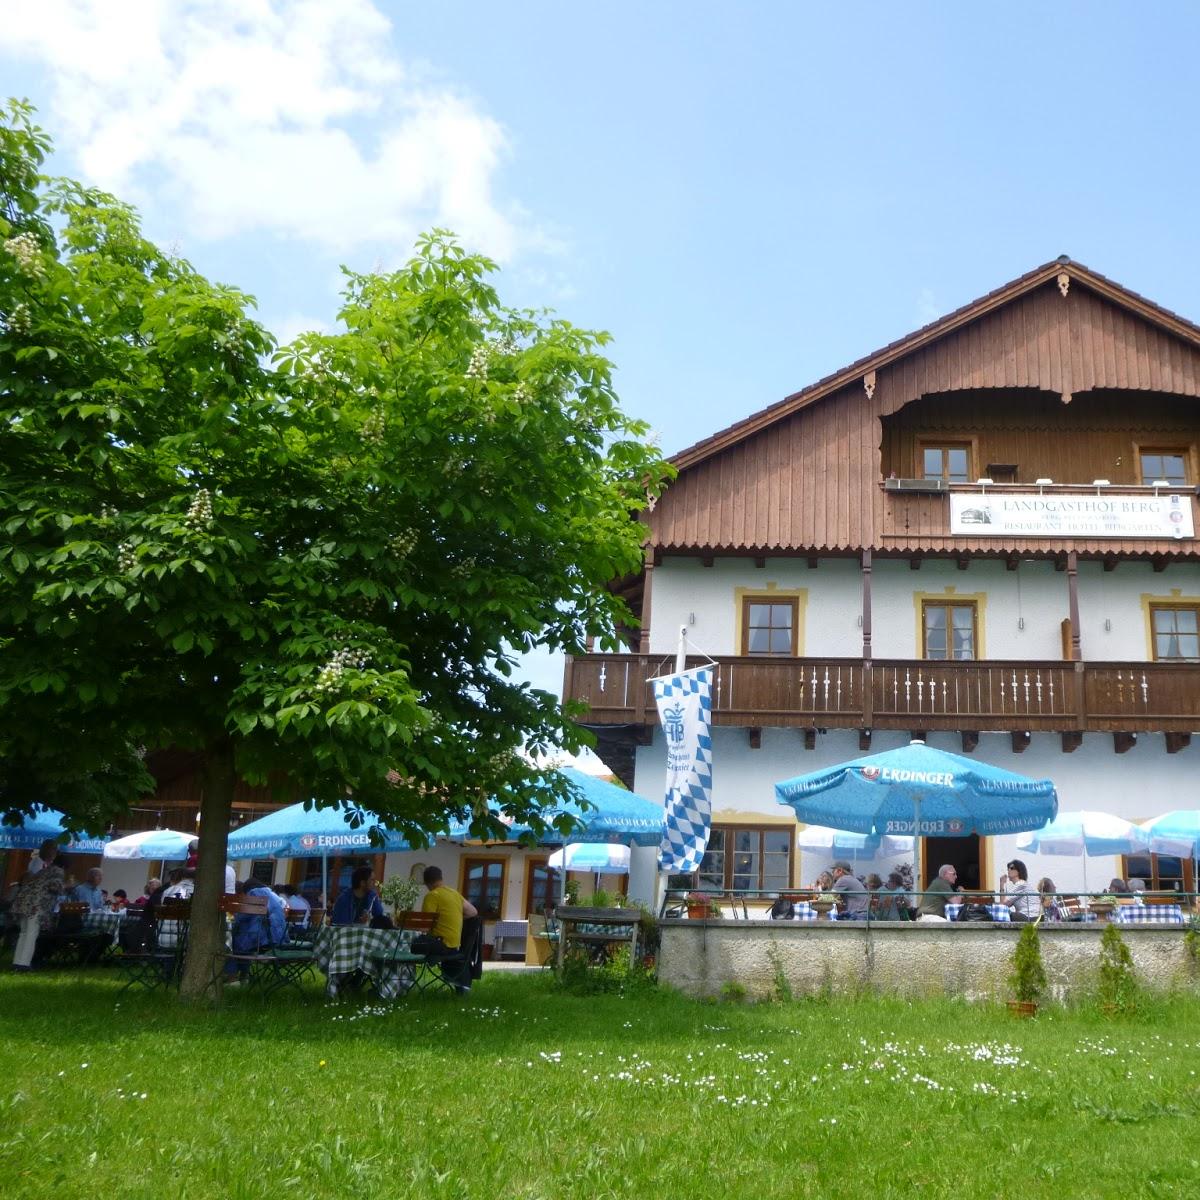 Restaurant "Landgasthof Berg" in  Eurasburg